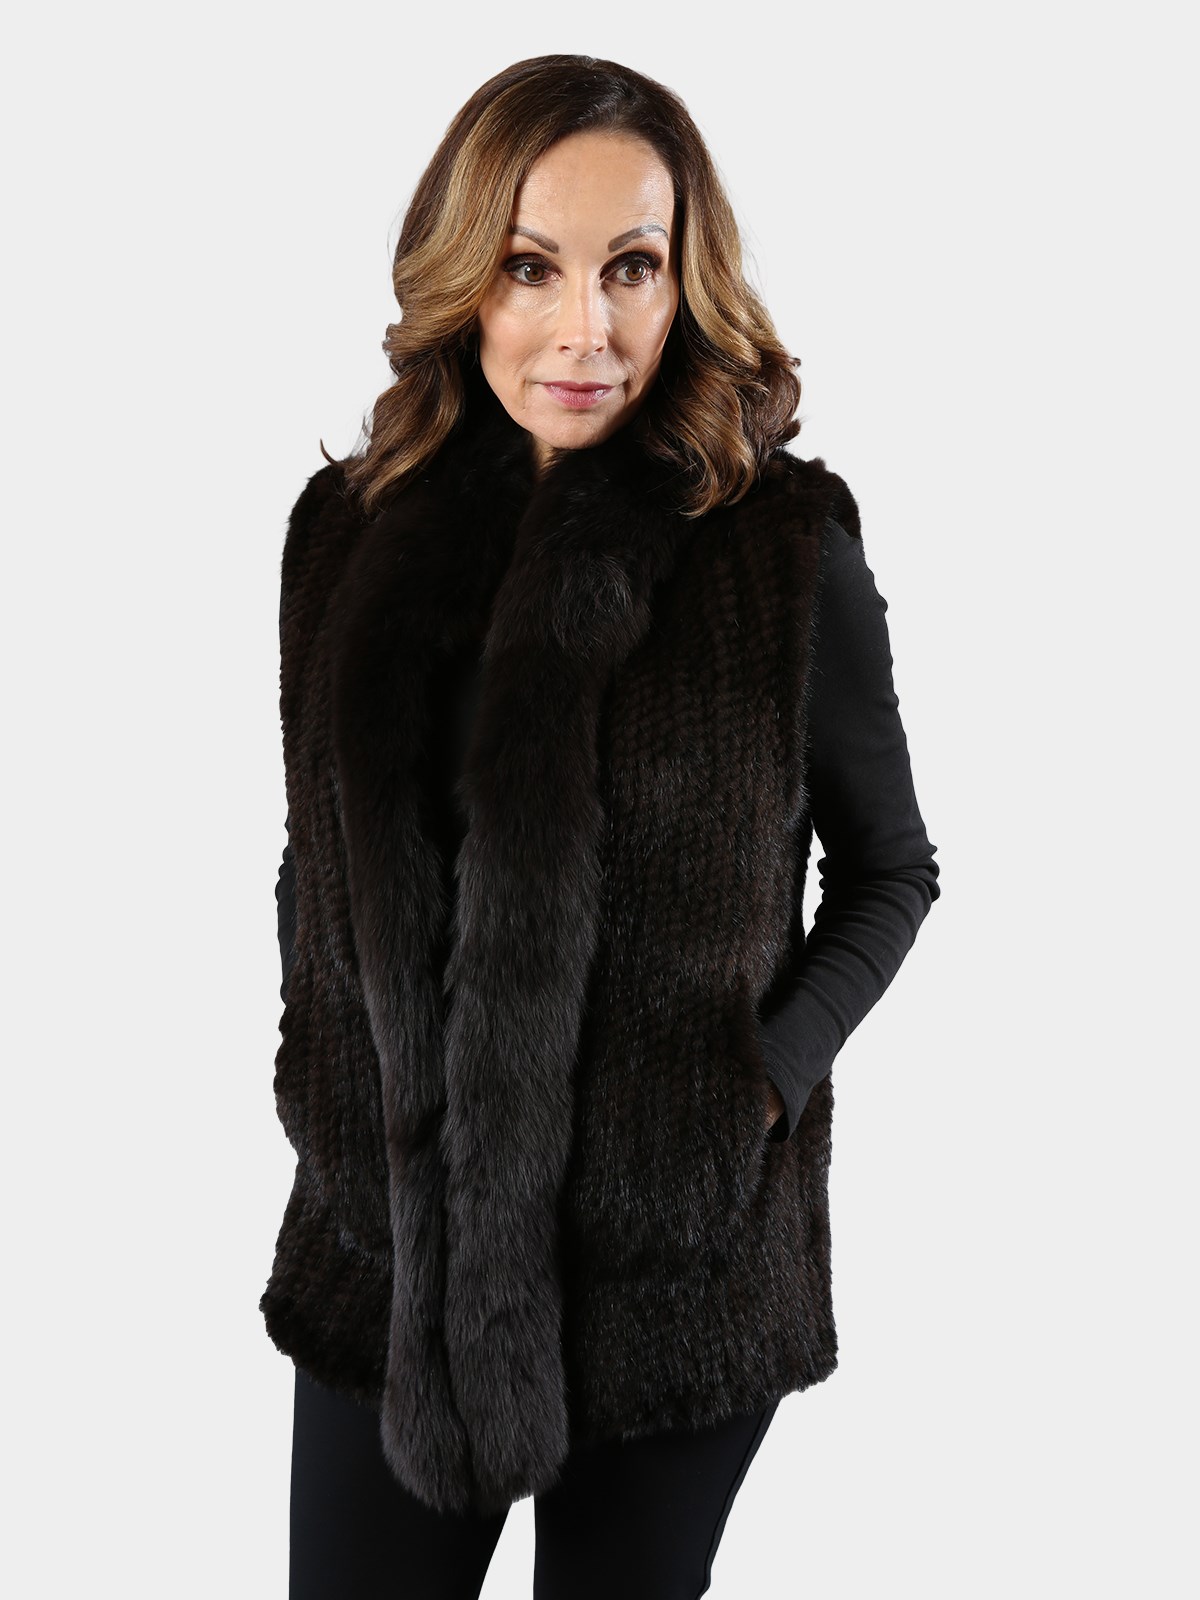 Woman's Brown Knit Mink Fur Vest with Fox Trim